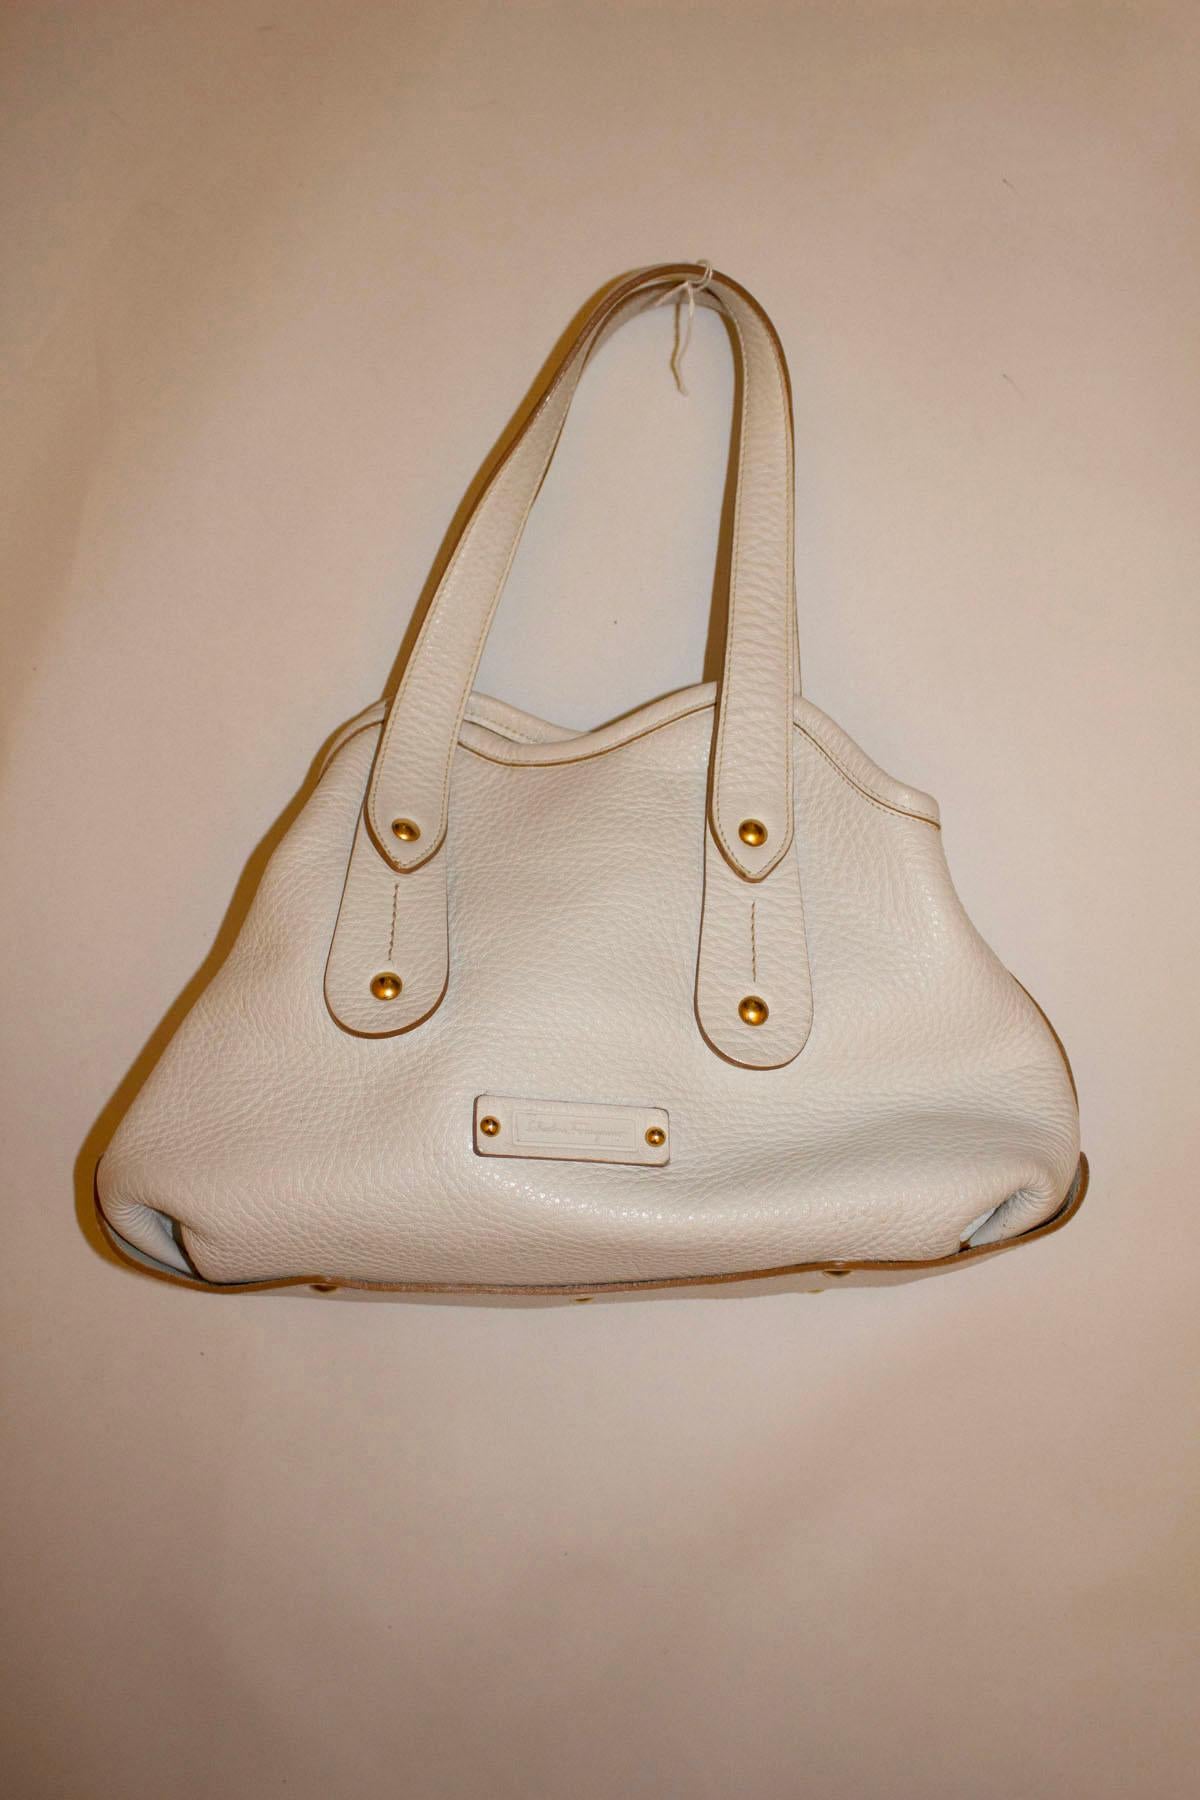 Salvatore Ferragamo White Leather Handbag In Good Condition For Sale In London, GB